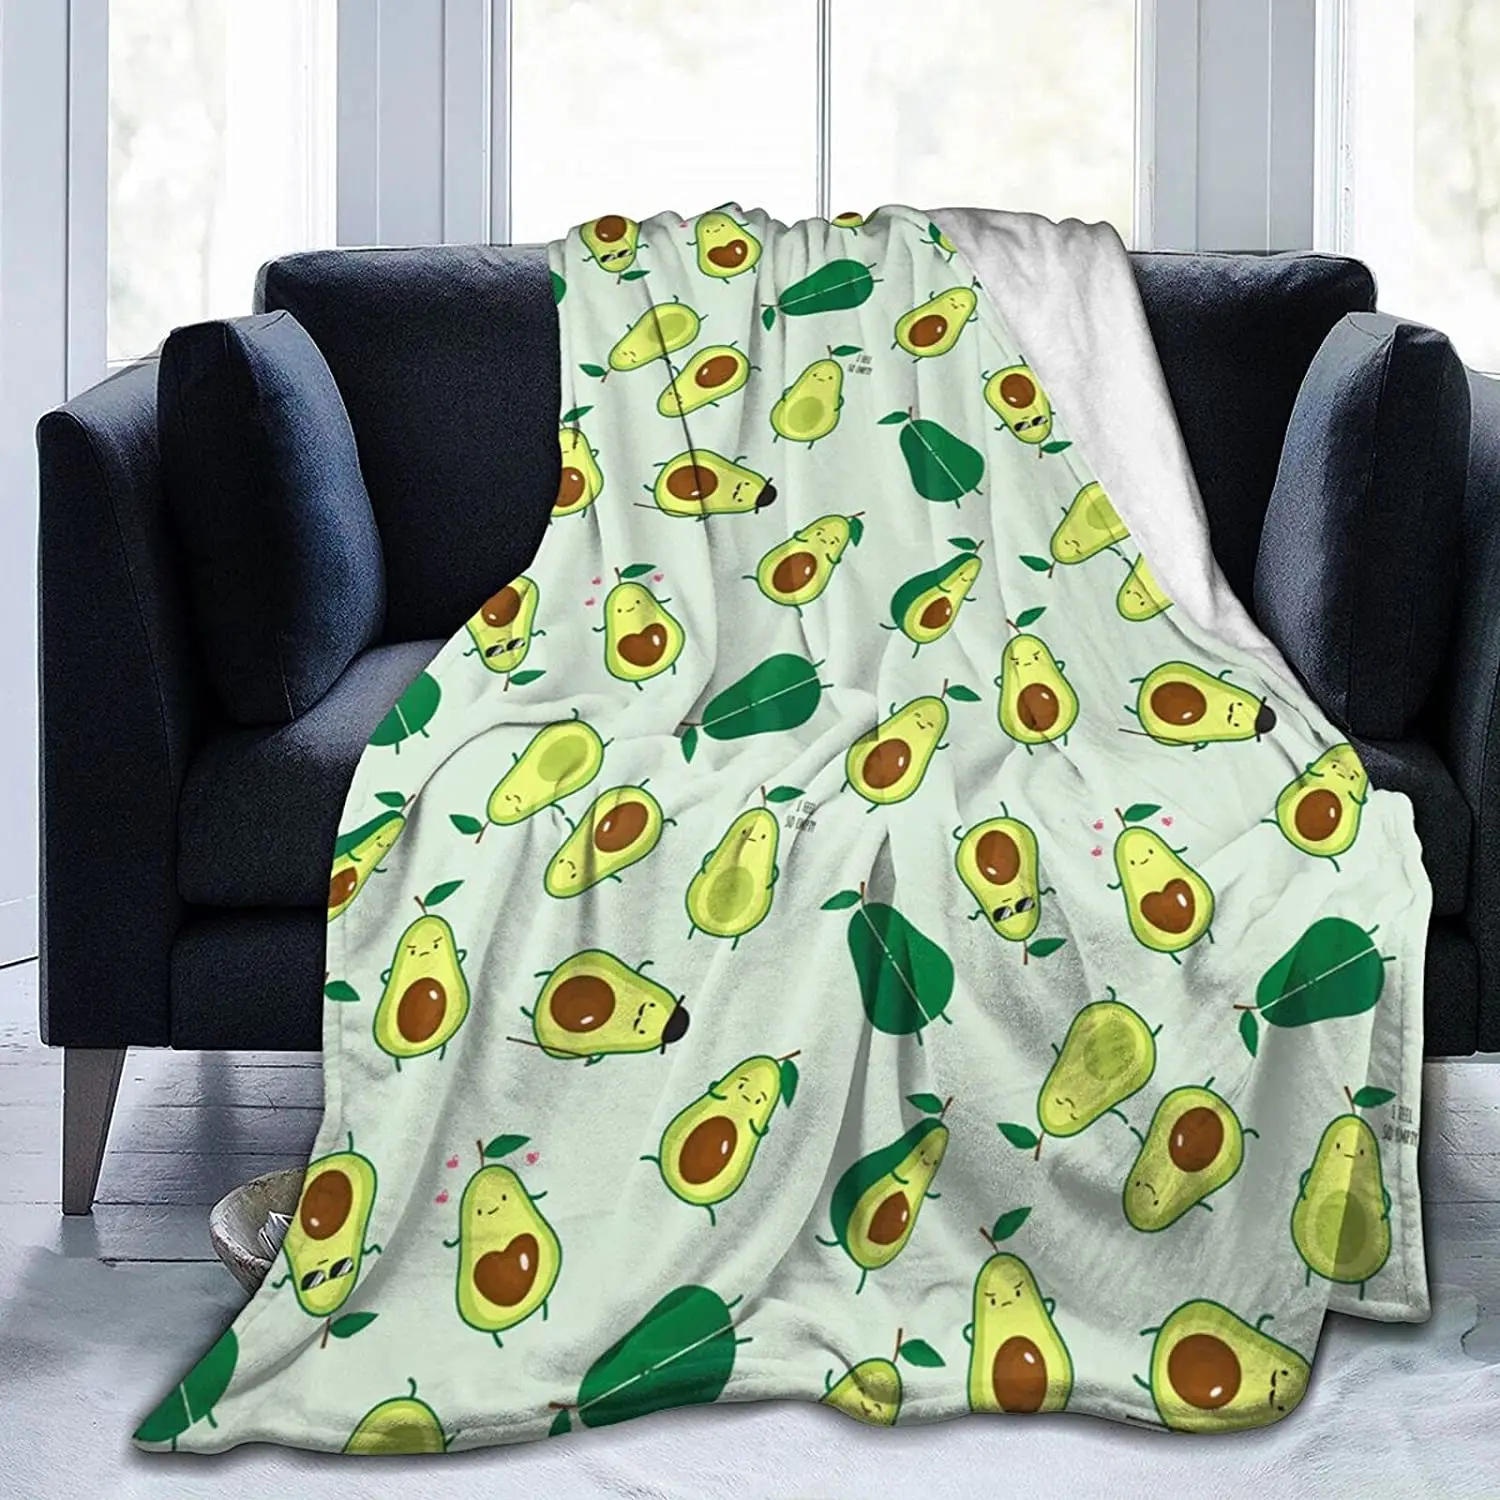 

Плед в виде авокадо, супермягкое легкое искусственное одеяло, уютное пушистое плюшевое одеяло из микрофибры для жаркого сна